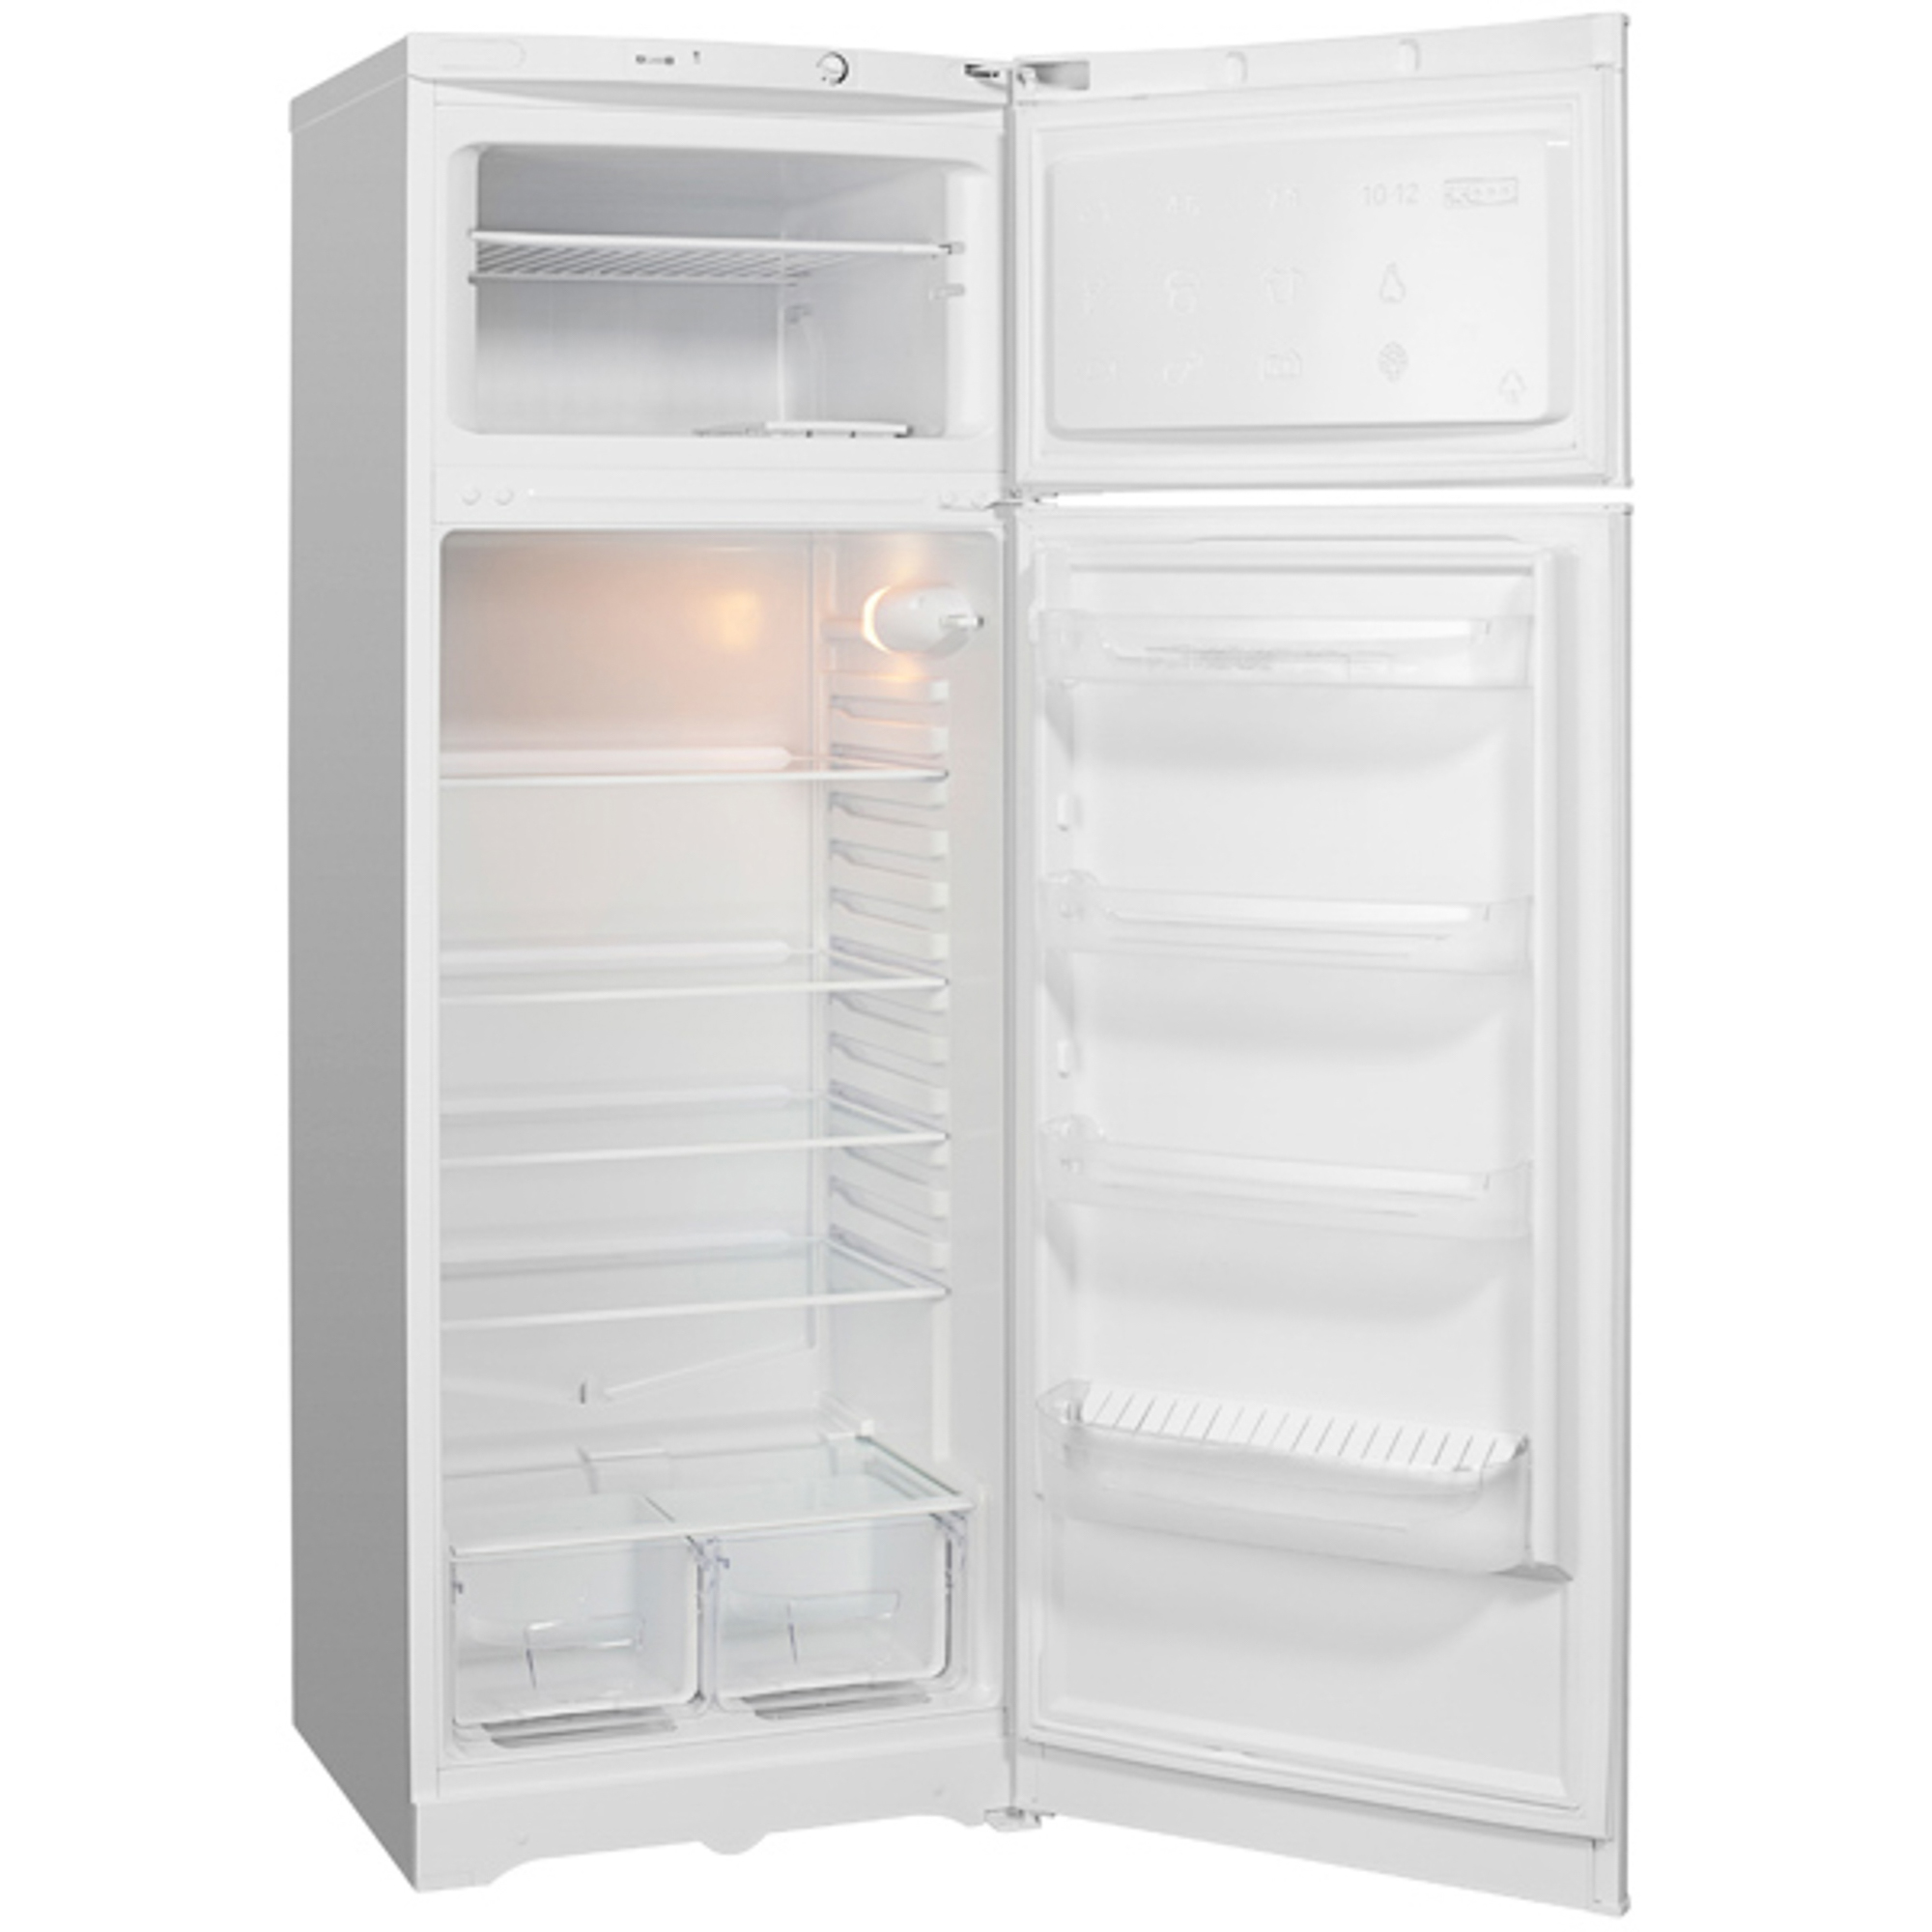 Холодильник Indesit TIA 16 White цена и фото